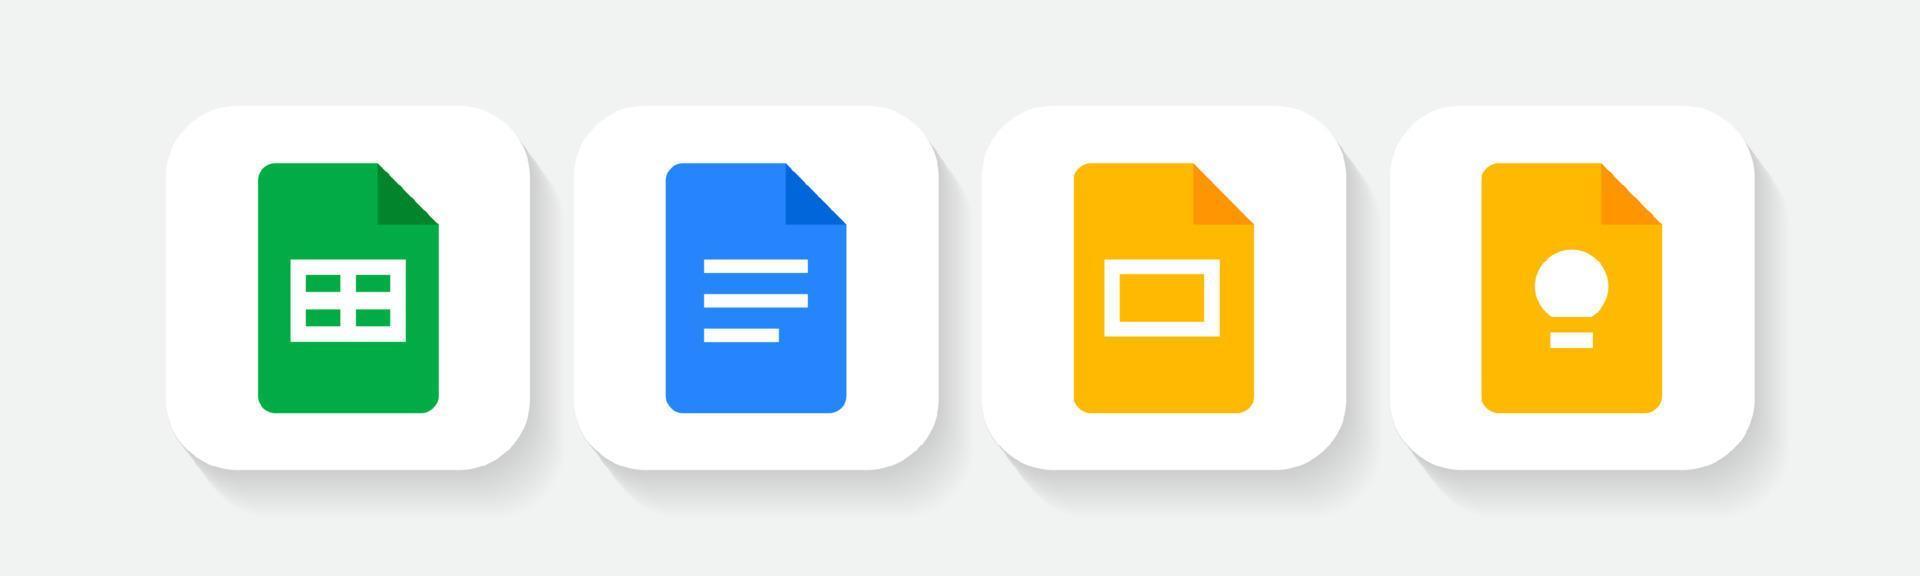 Icon von Google Sheets, Docs, Slides einstellen, Notizen machen und Logos auflisten vektor